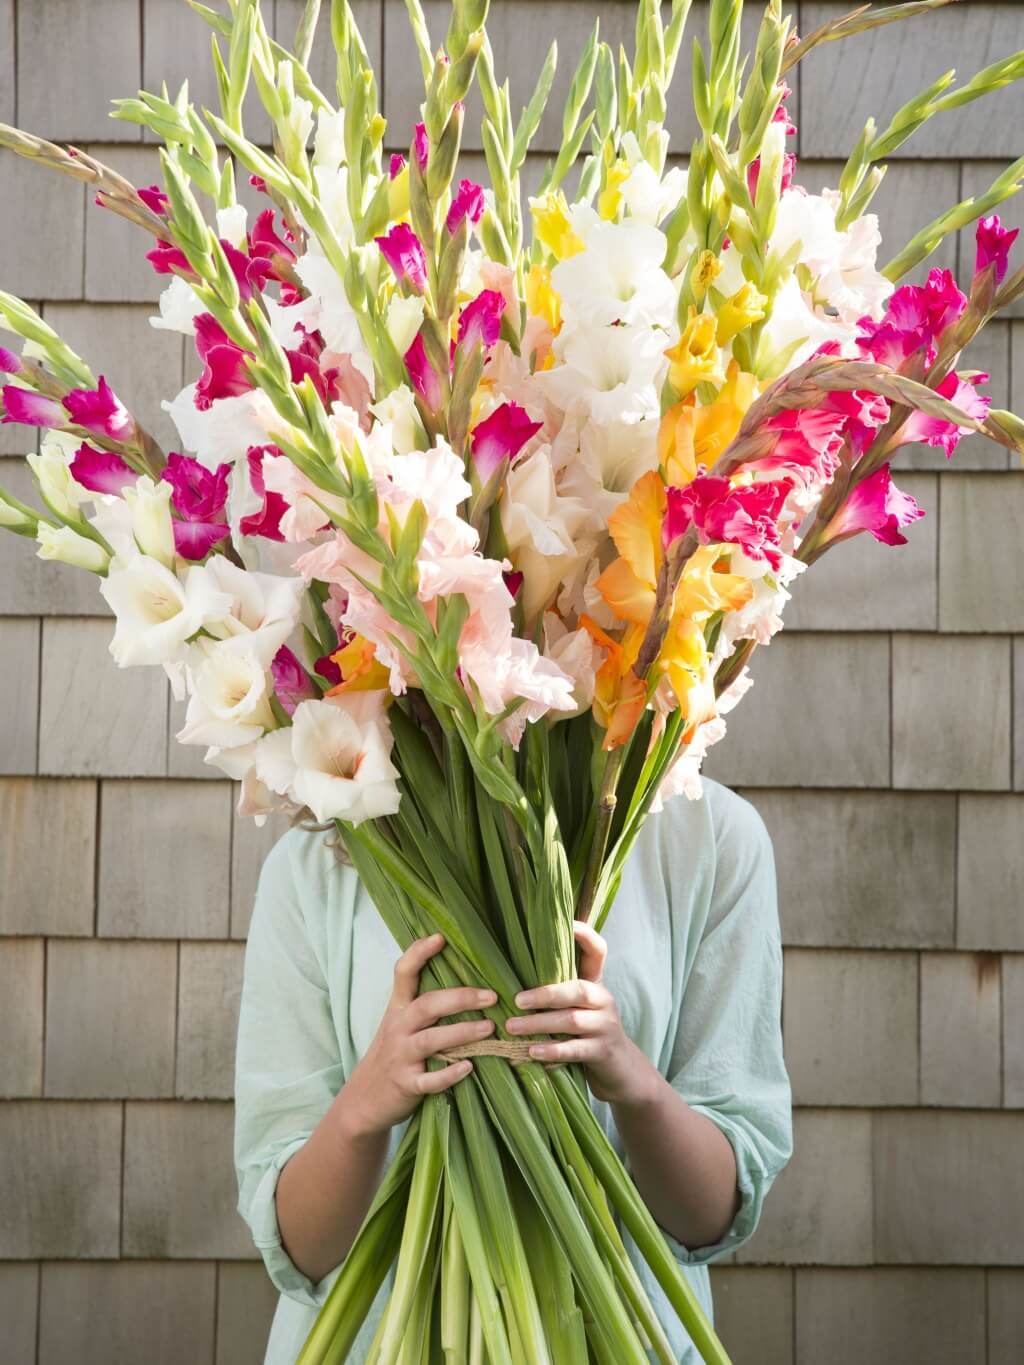 Доставка цветов в москве гладиолусы большой набор фломастеров 100 цветов купить